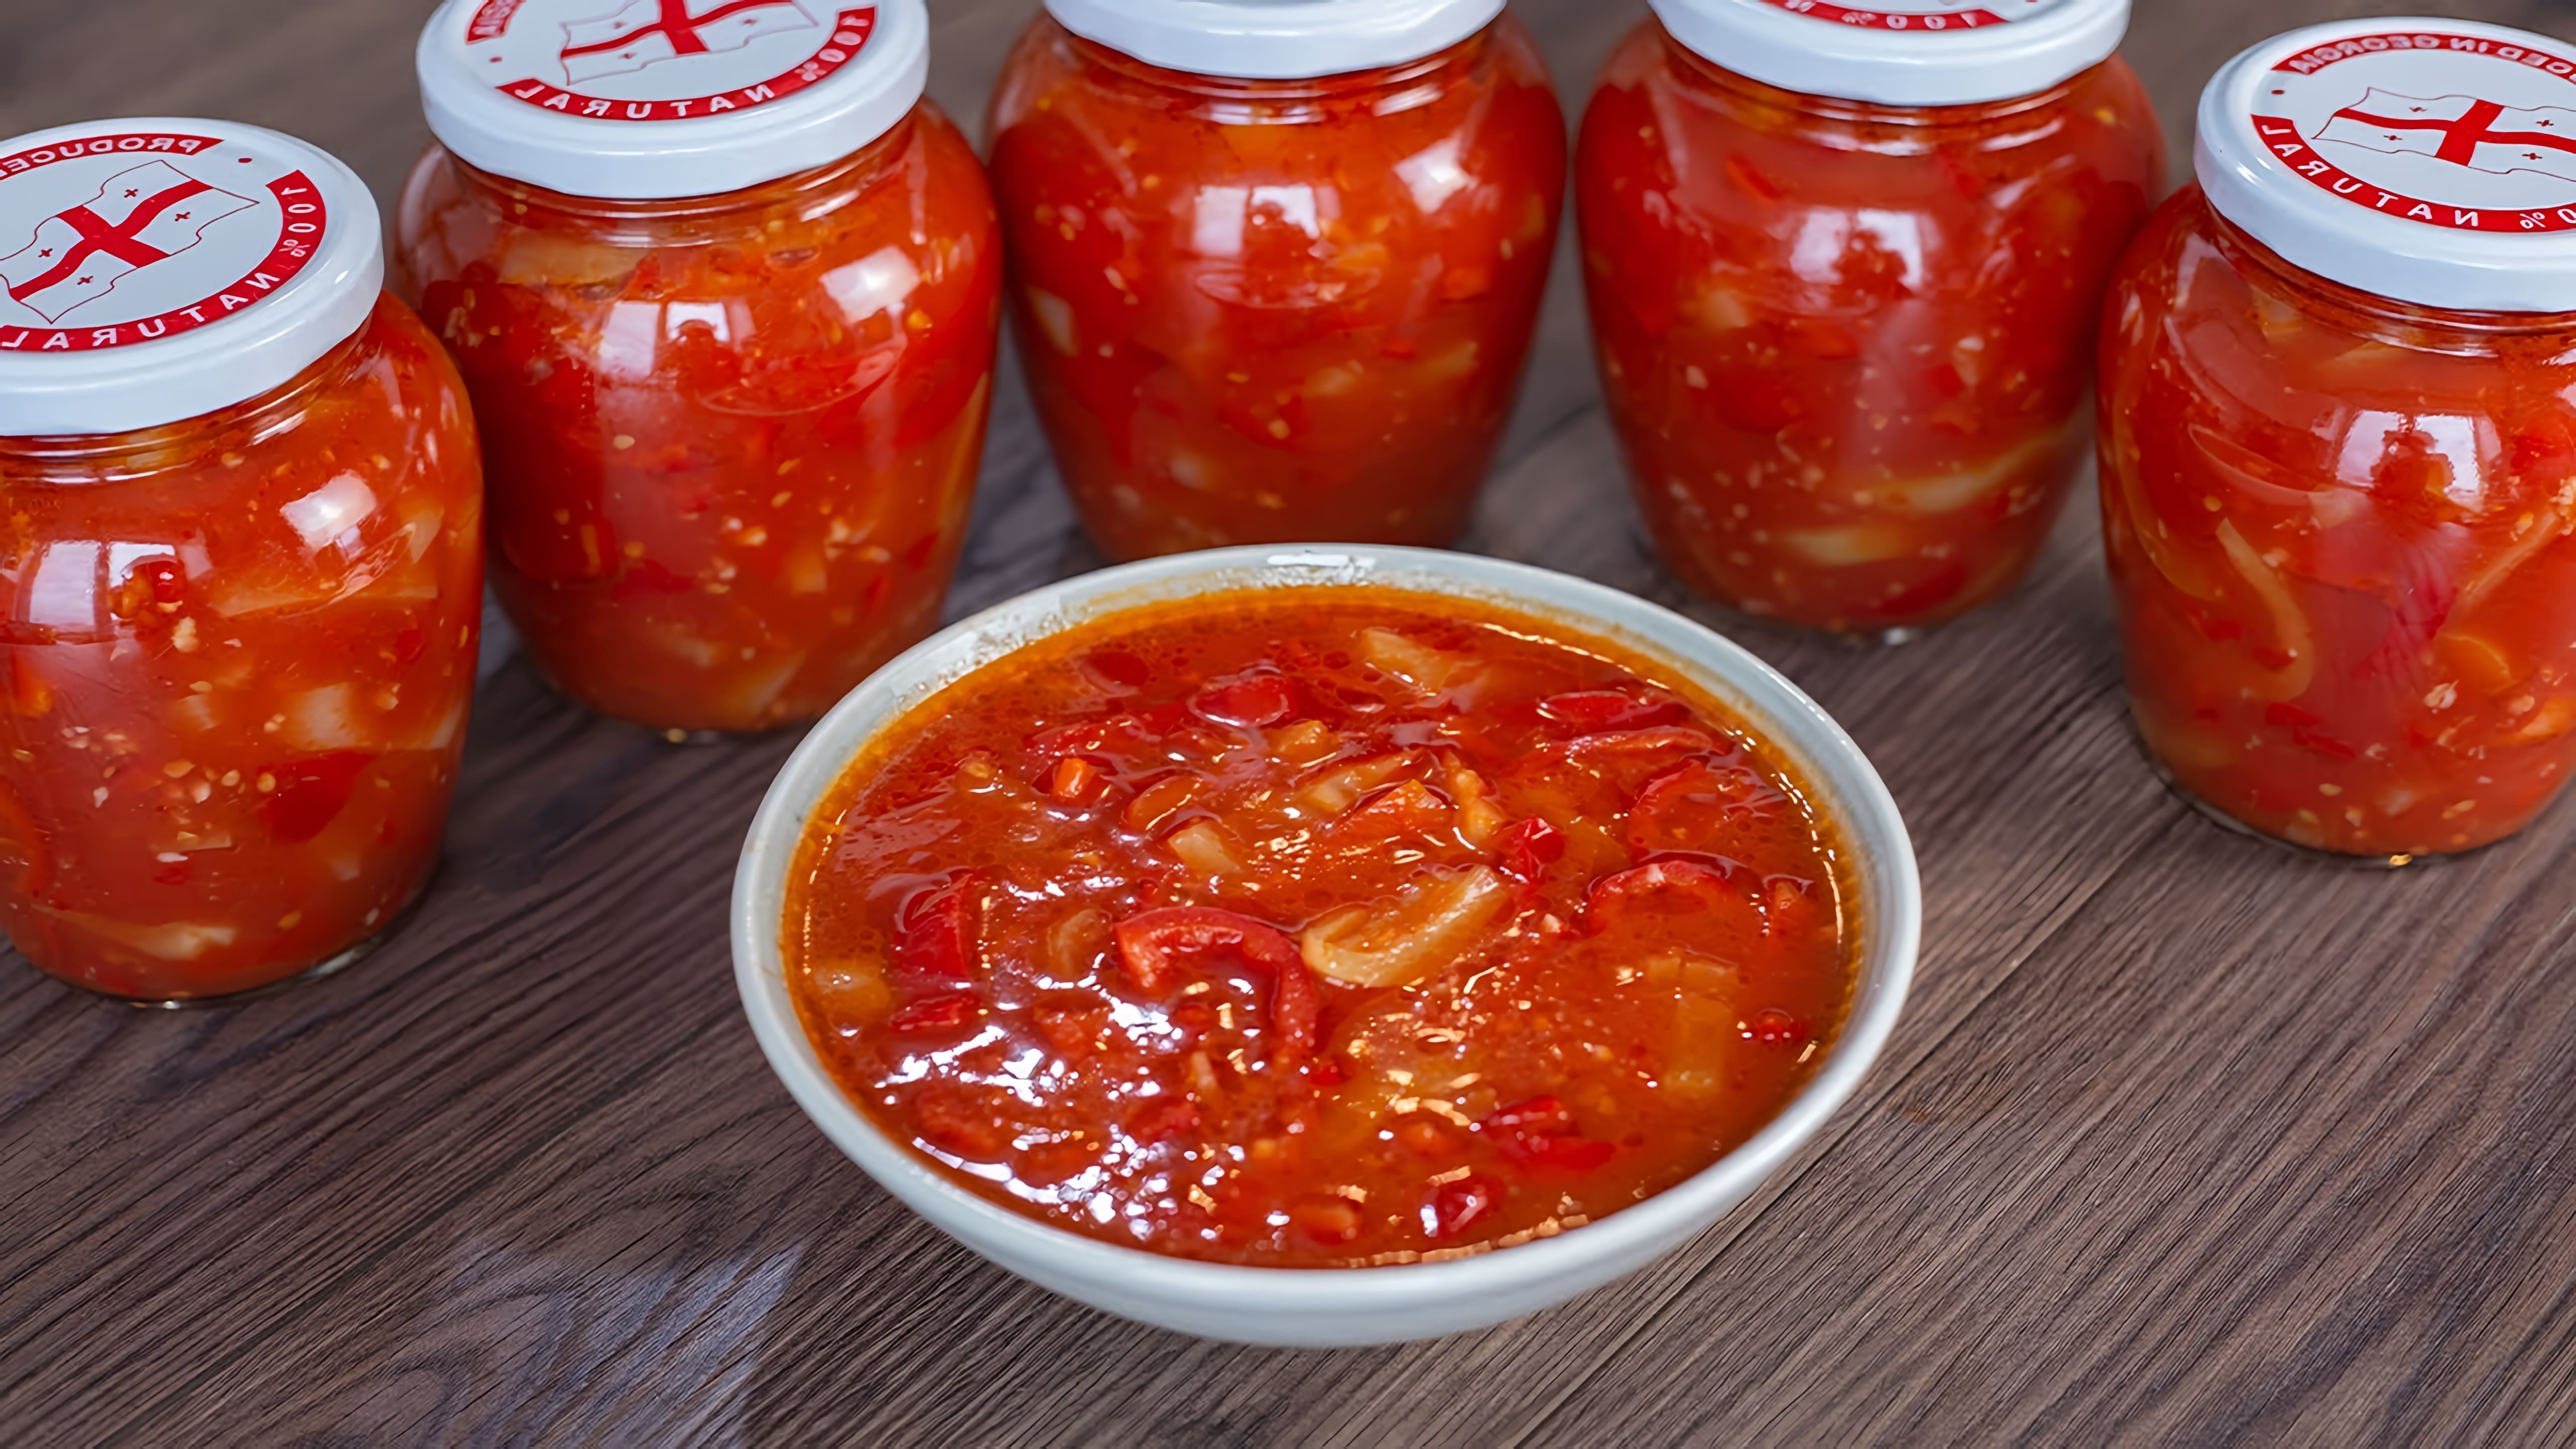 Видео посвящено приготовлению лечо, болгарского перченого соуса, по рецепту тещи ведущего